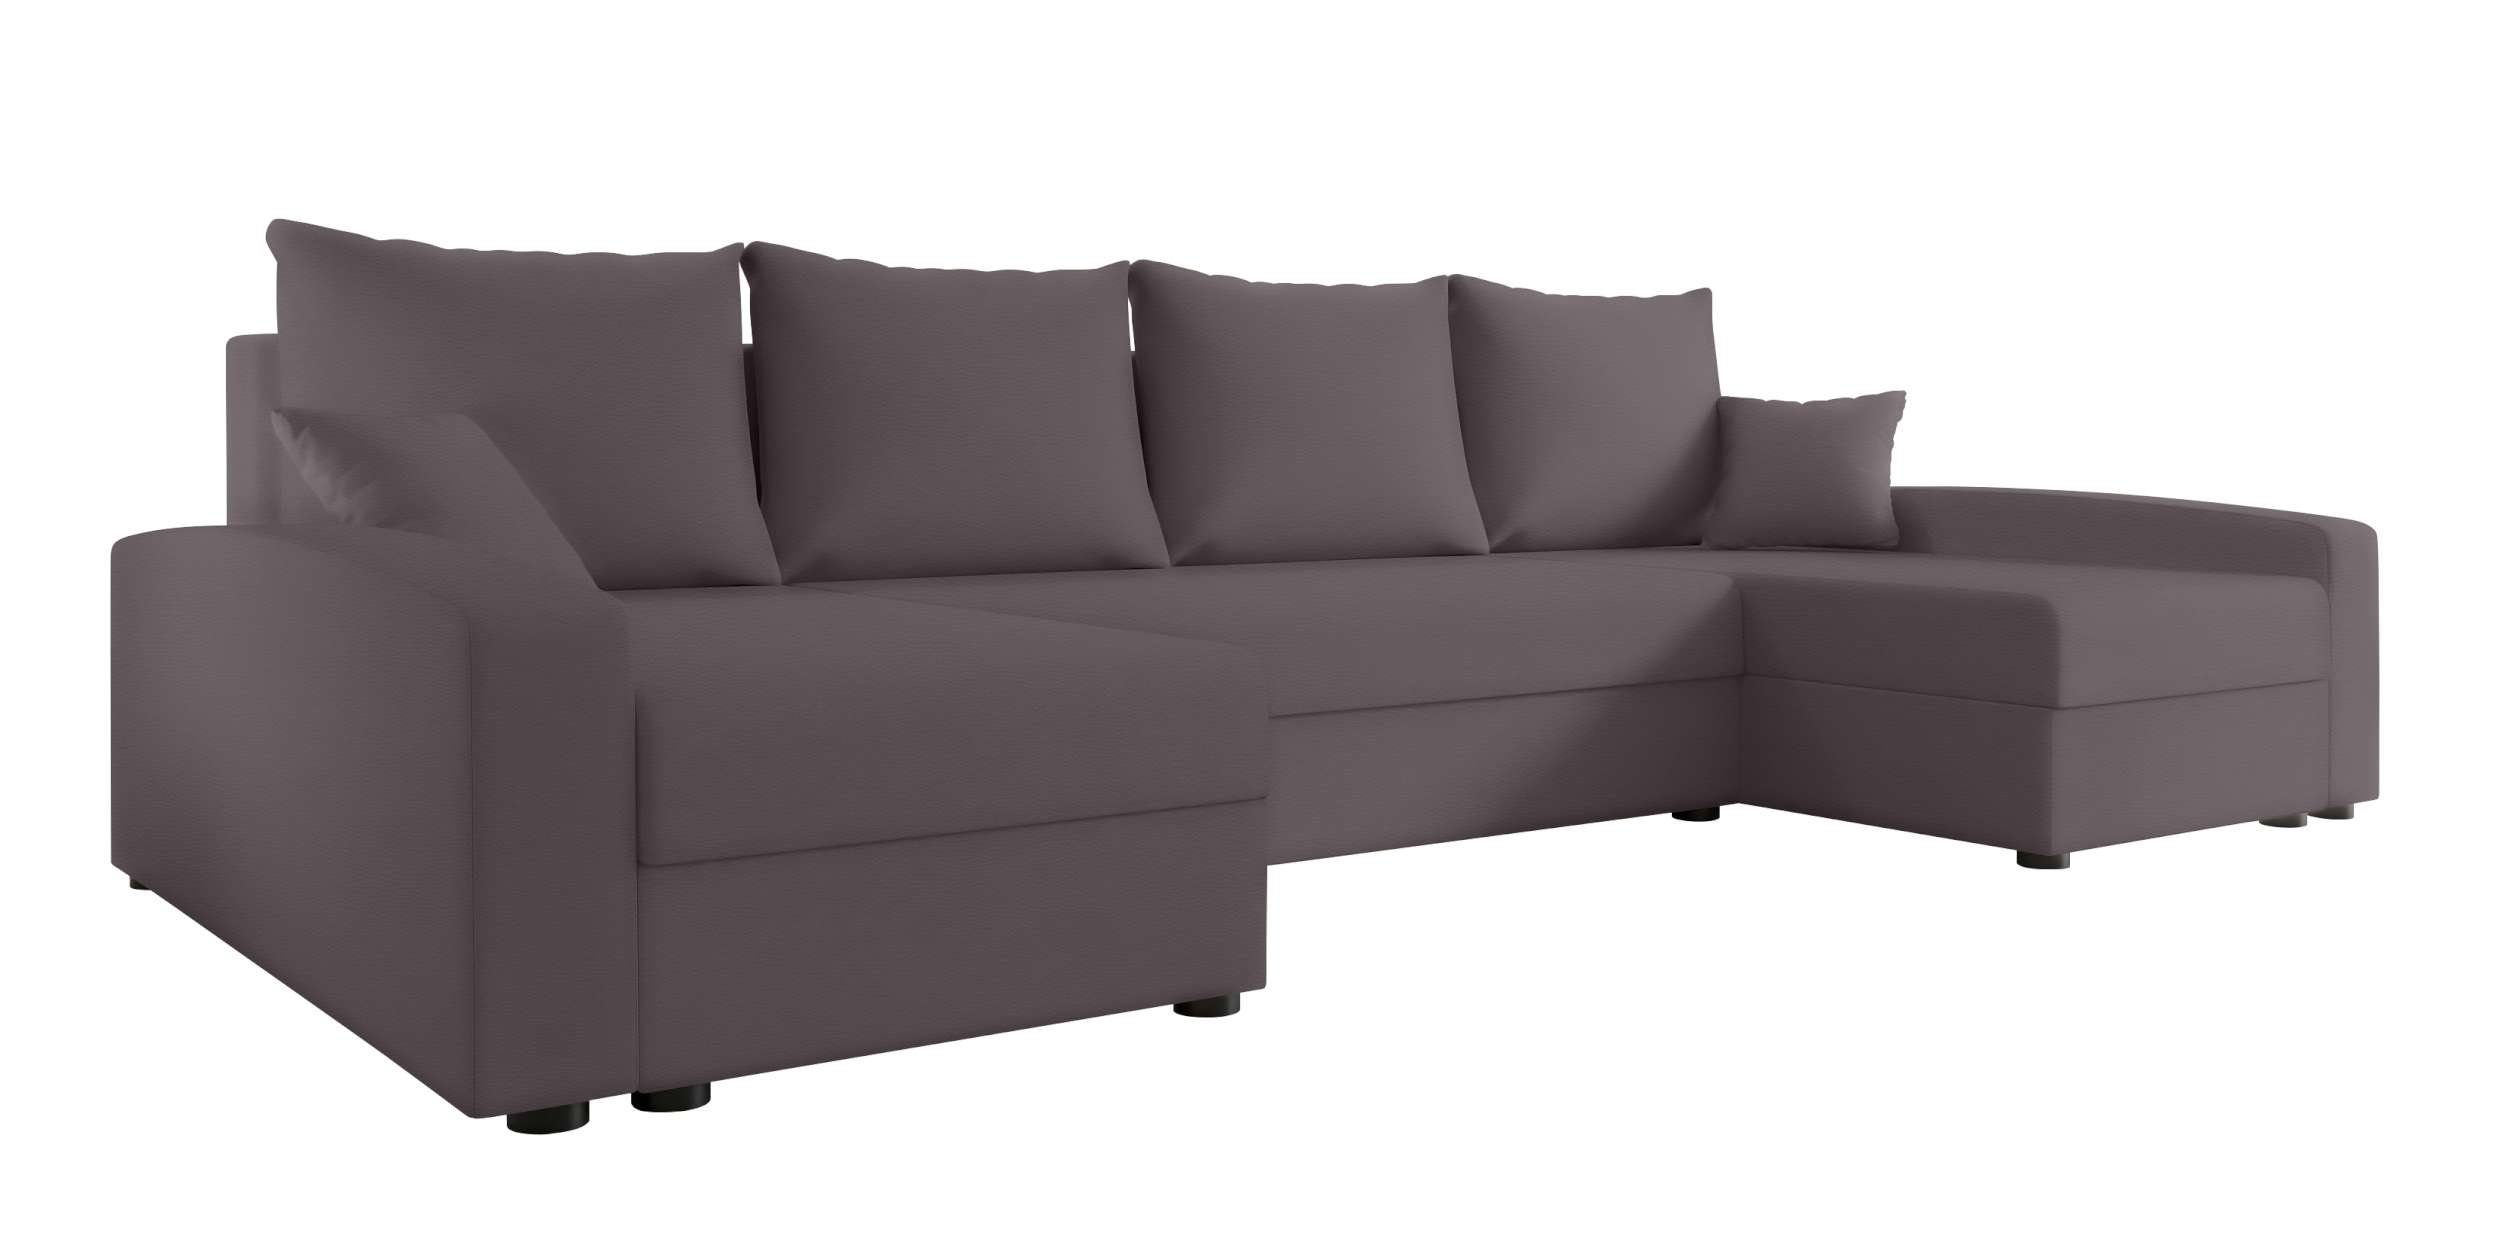 Bettfunktion, Design Stylefy mit Addison, mit Bettkasten, U-Form, Sitzkomfort, Modern Wohnlandschaft Eckcouch, Sofa,